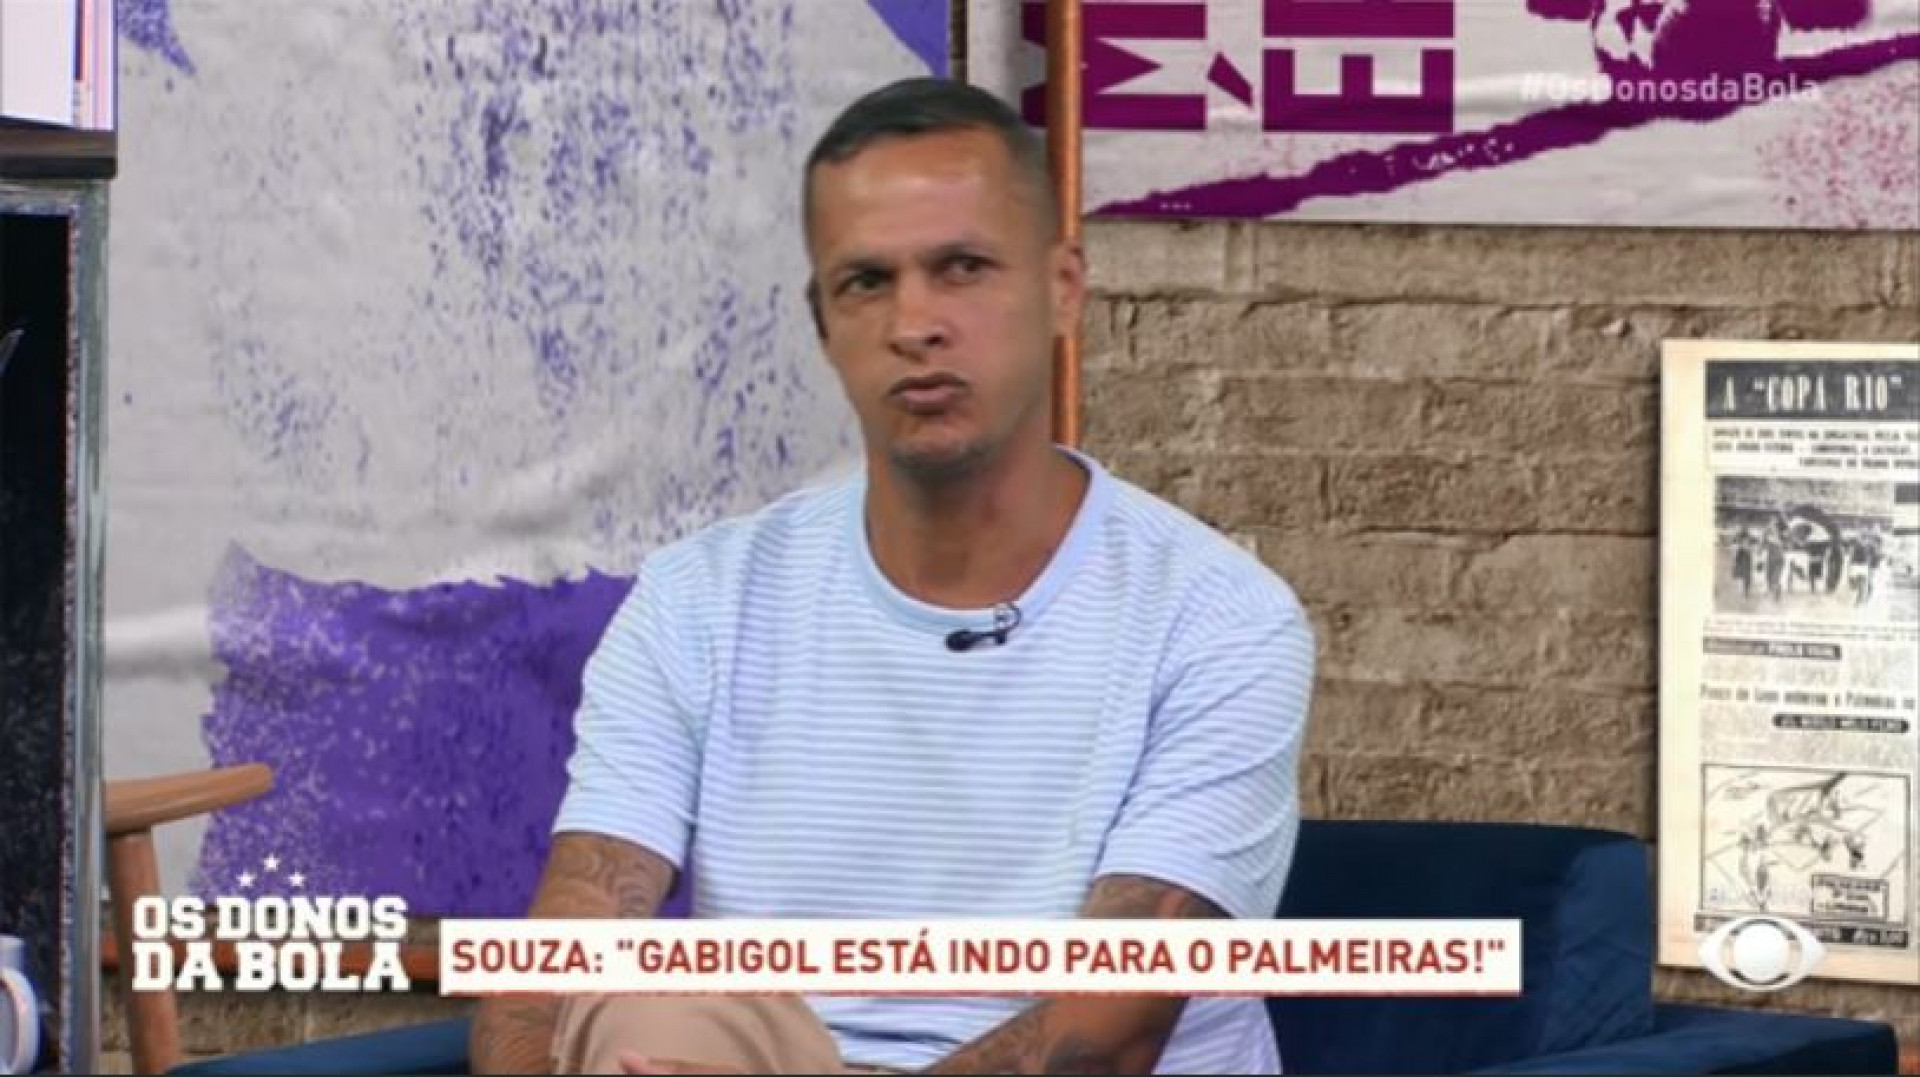 El exjugador Souza habla del interés de Gabigol de mudarse al Palmeiras - sitio clon BAND